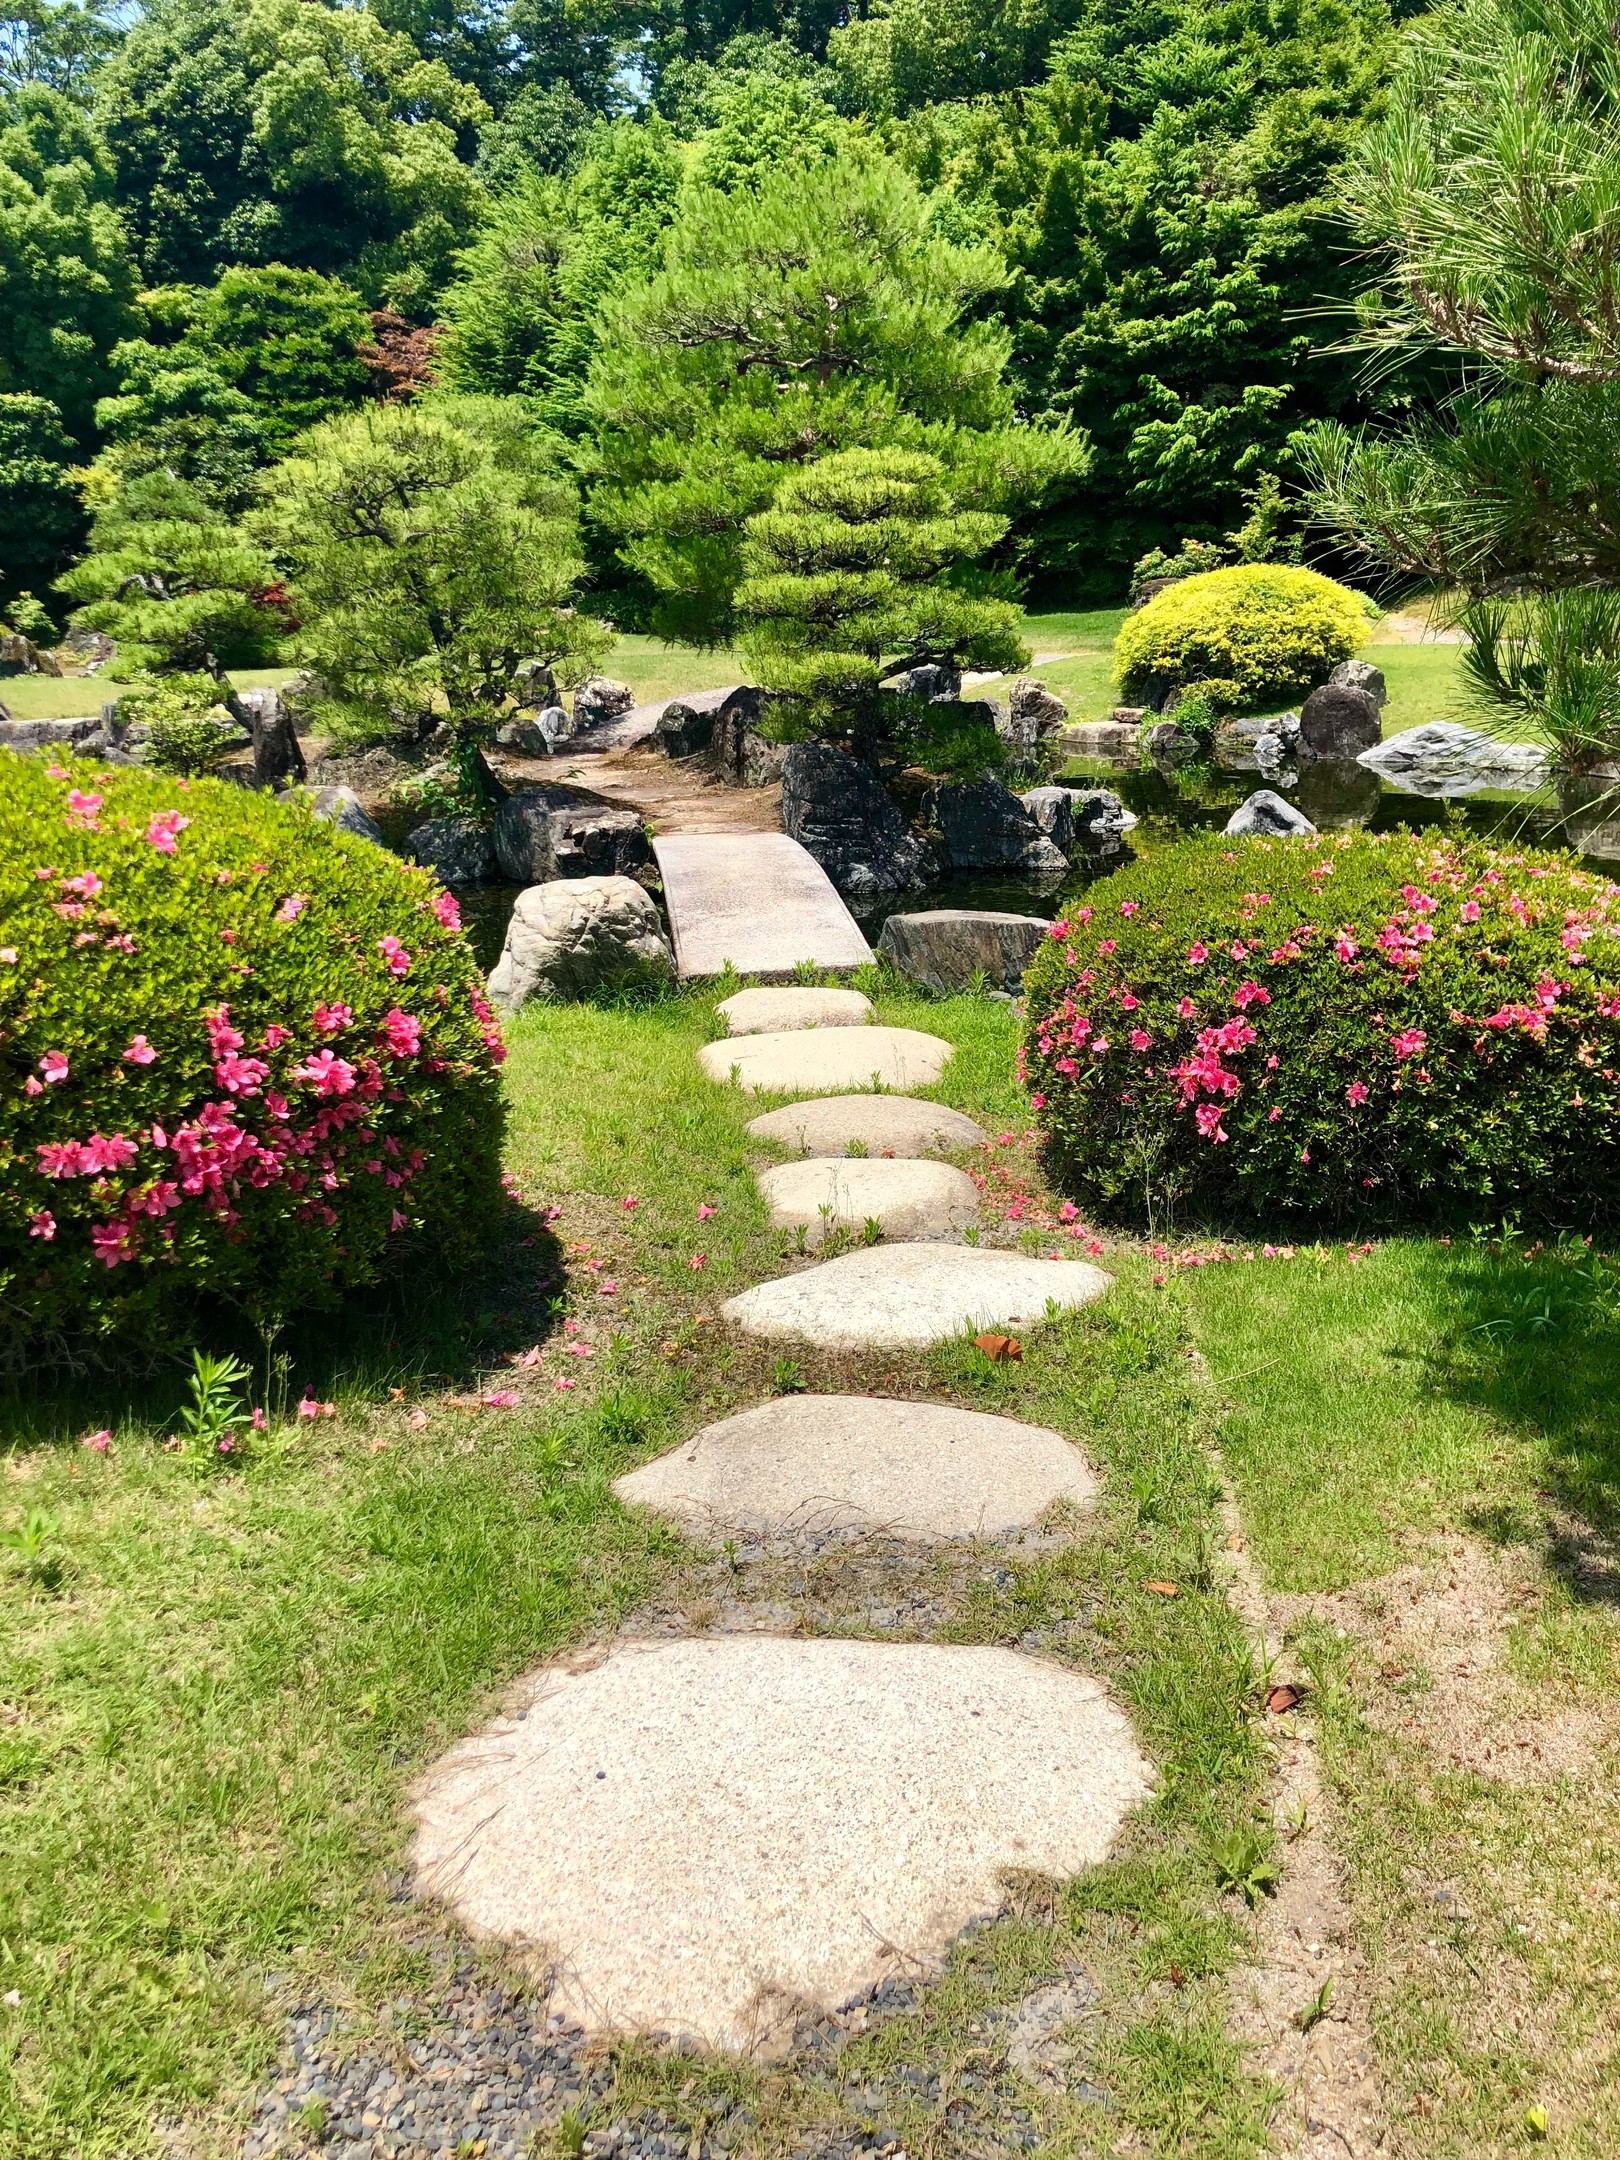 Phong cách Nhật Bản thực sự biến khu vườn trở thành một ốc đảo yên bình để thư giãn.